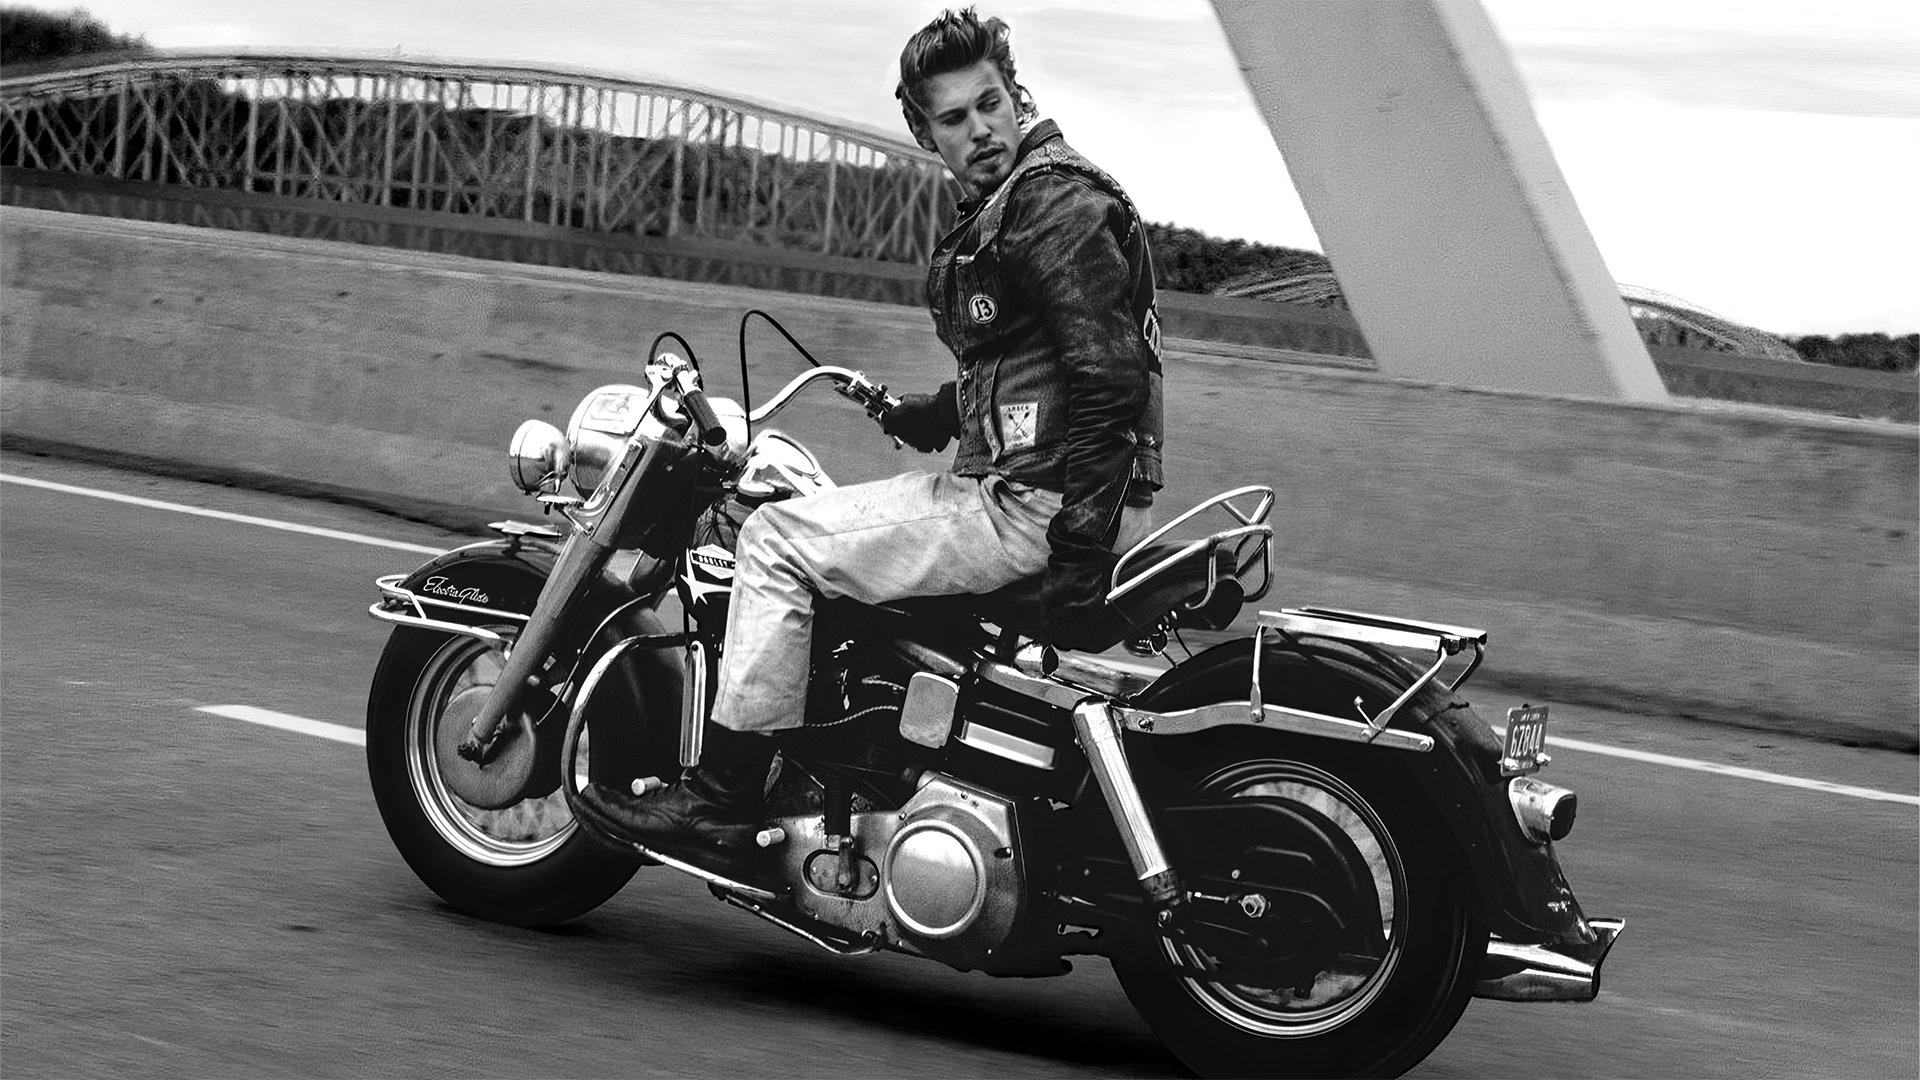 موتورسواری آستین باتلر در نخستین تصویر فیلم The Bikeriders